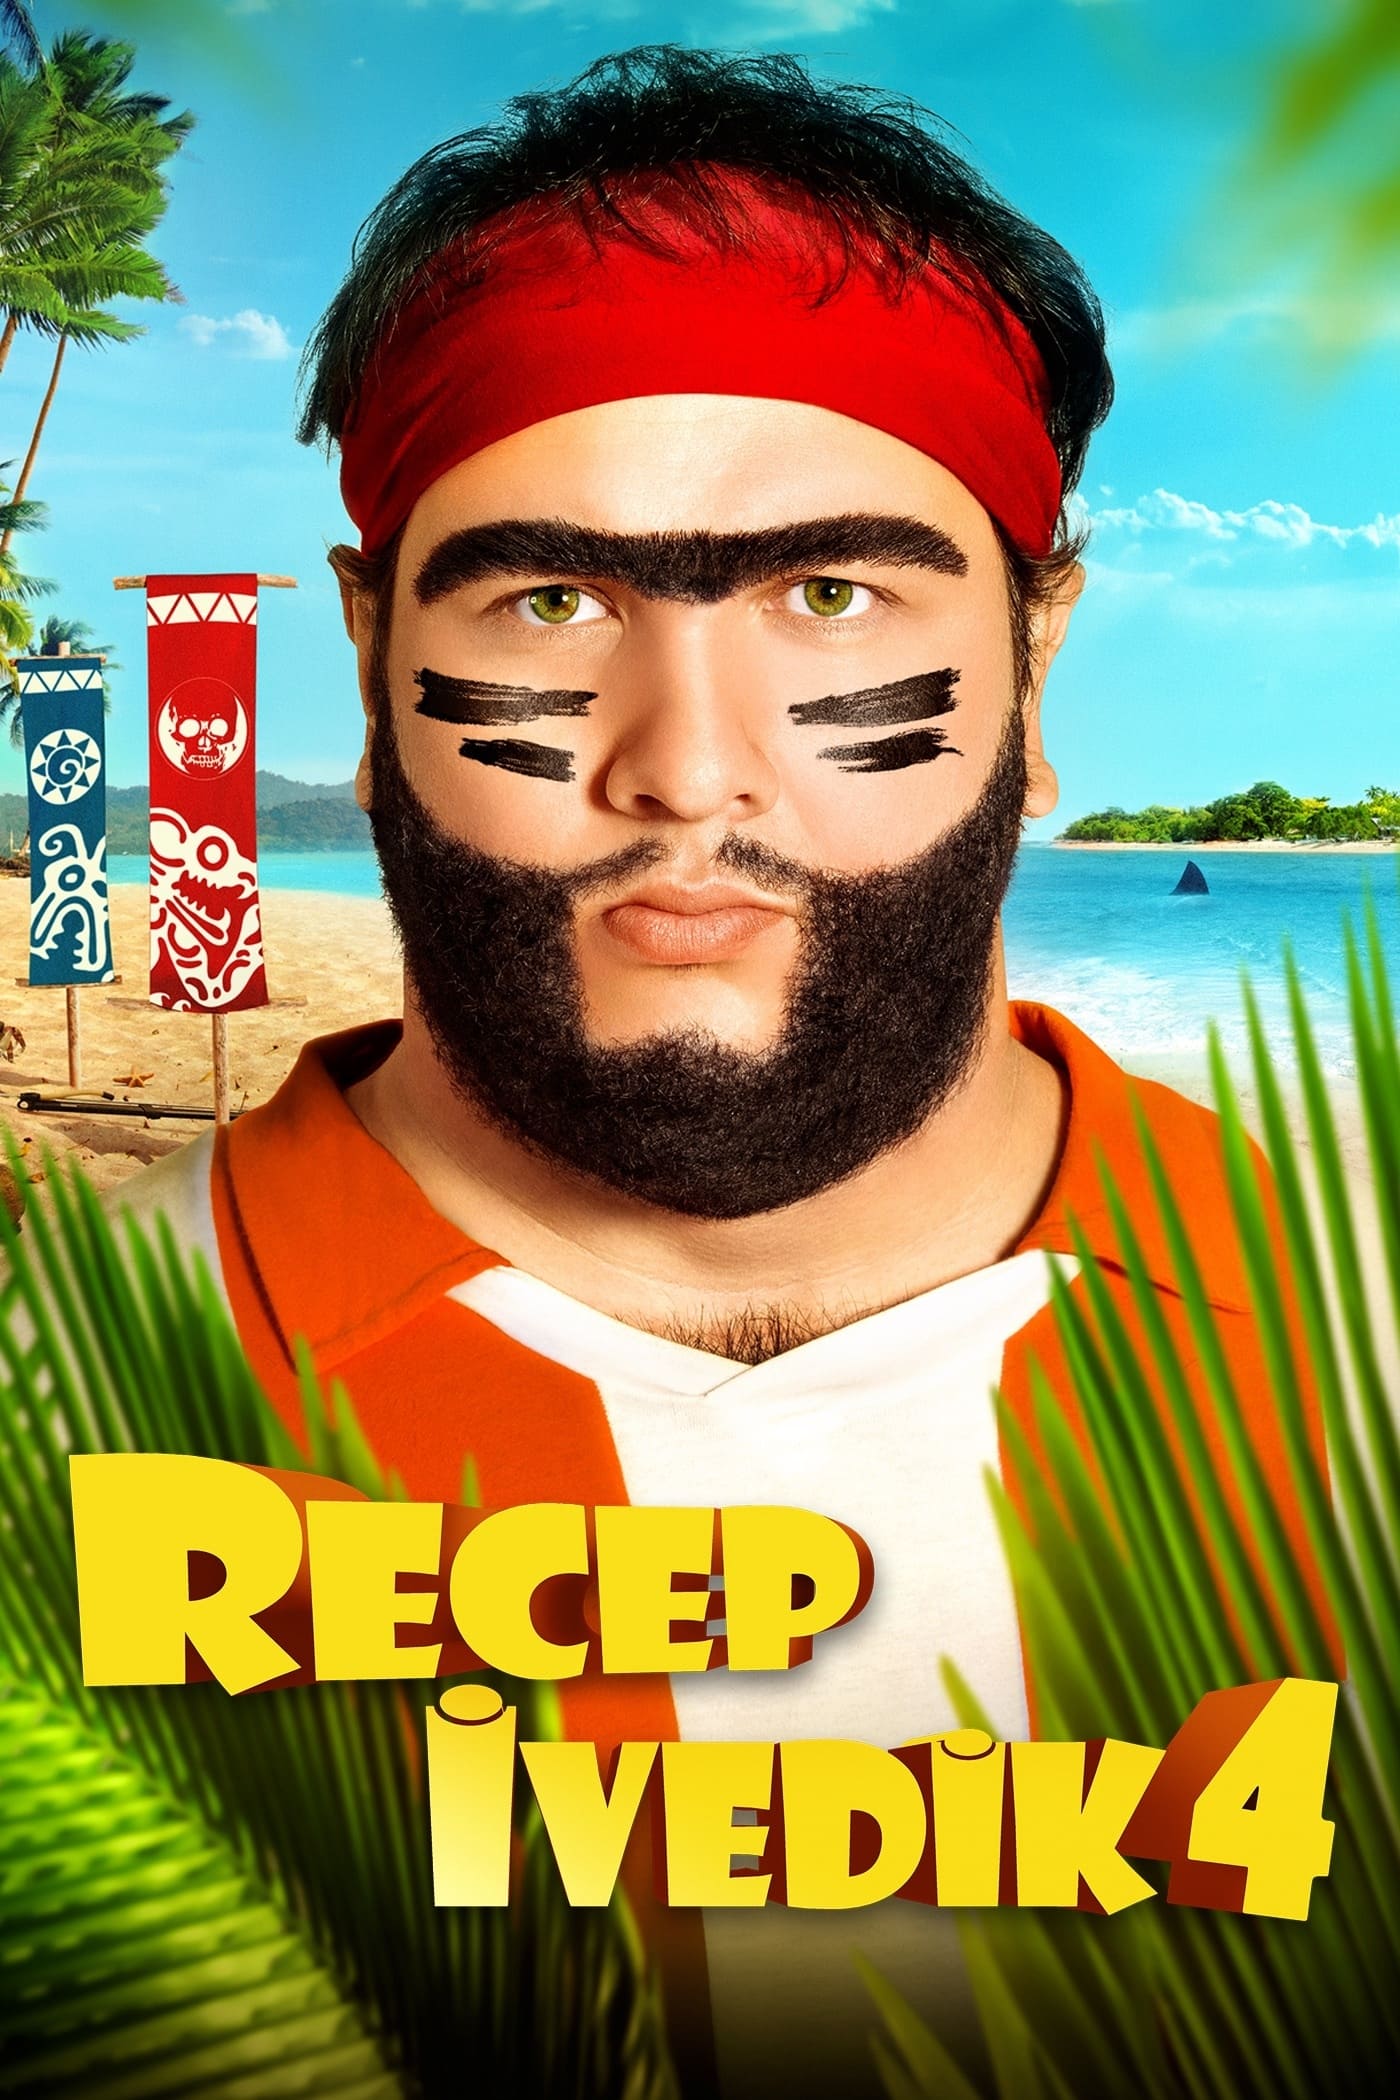 دانلود فیلم Recep Ivedik 4 2014 با دوبله فارسی